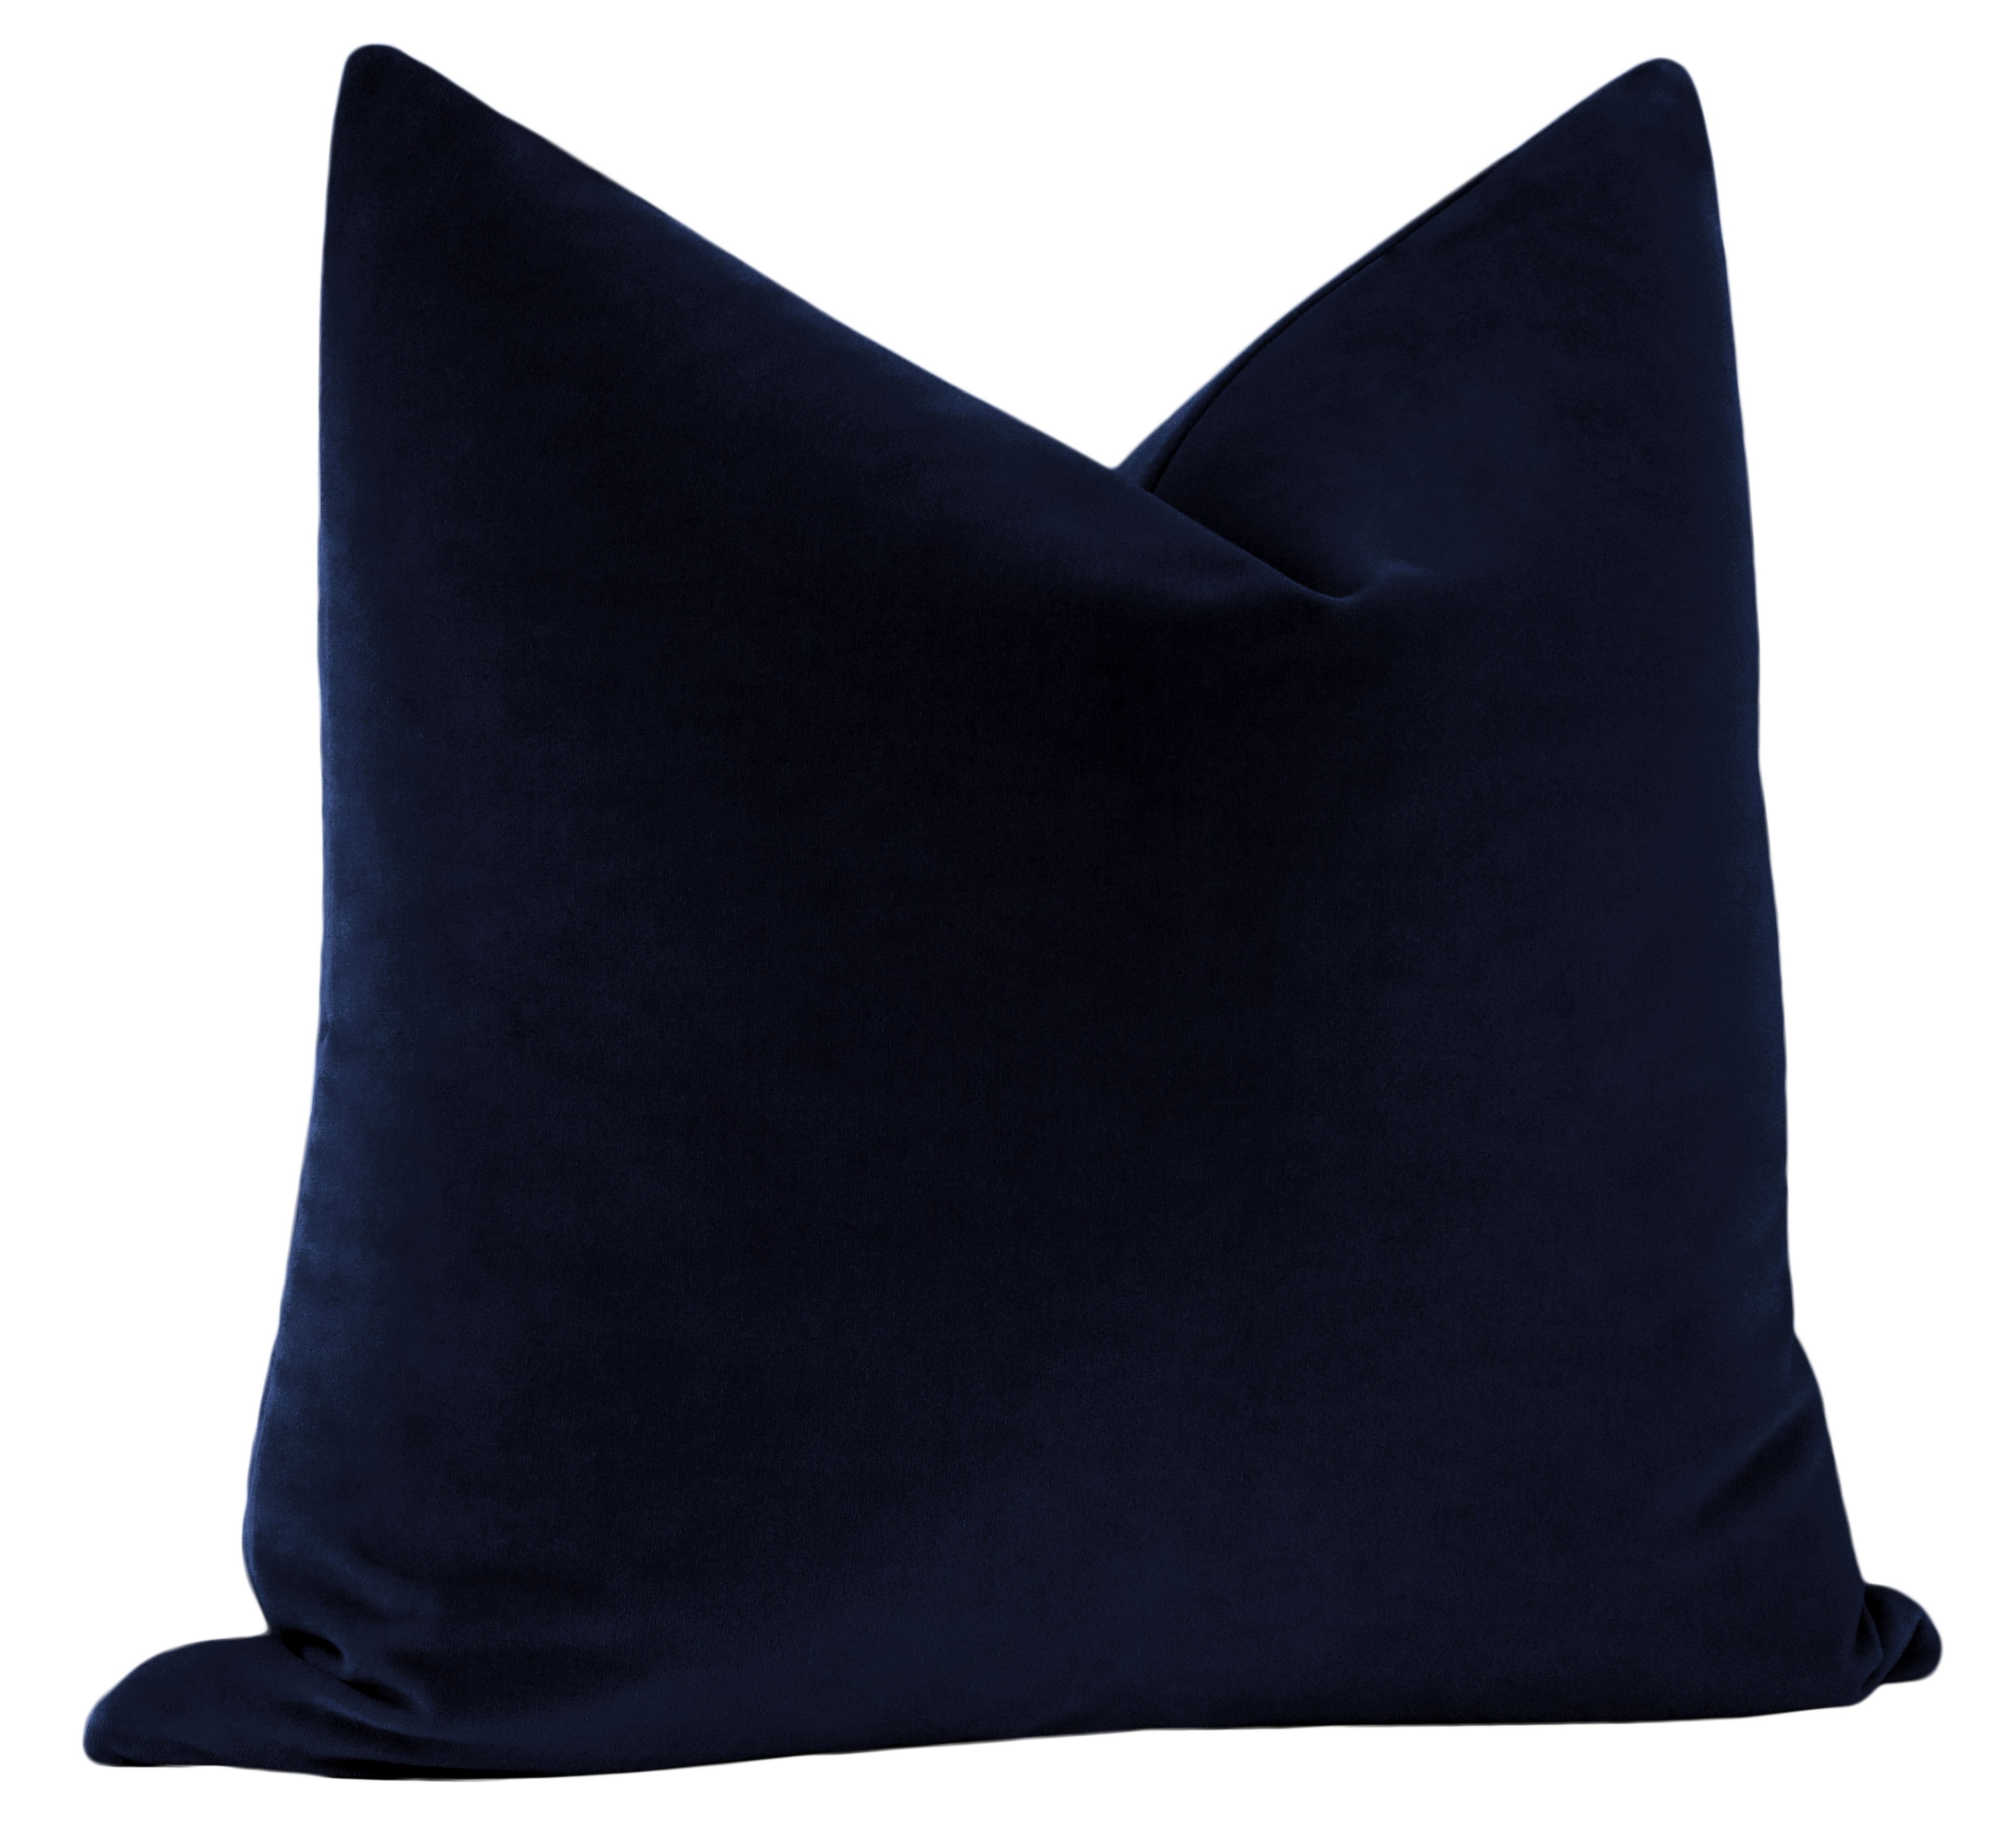 Studio Velvet Pillow Cover, Sapphire, 20" x 20" - Image 2